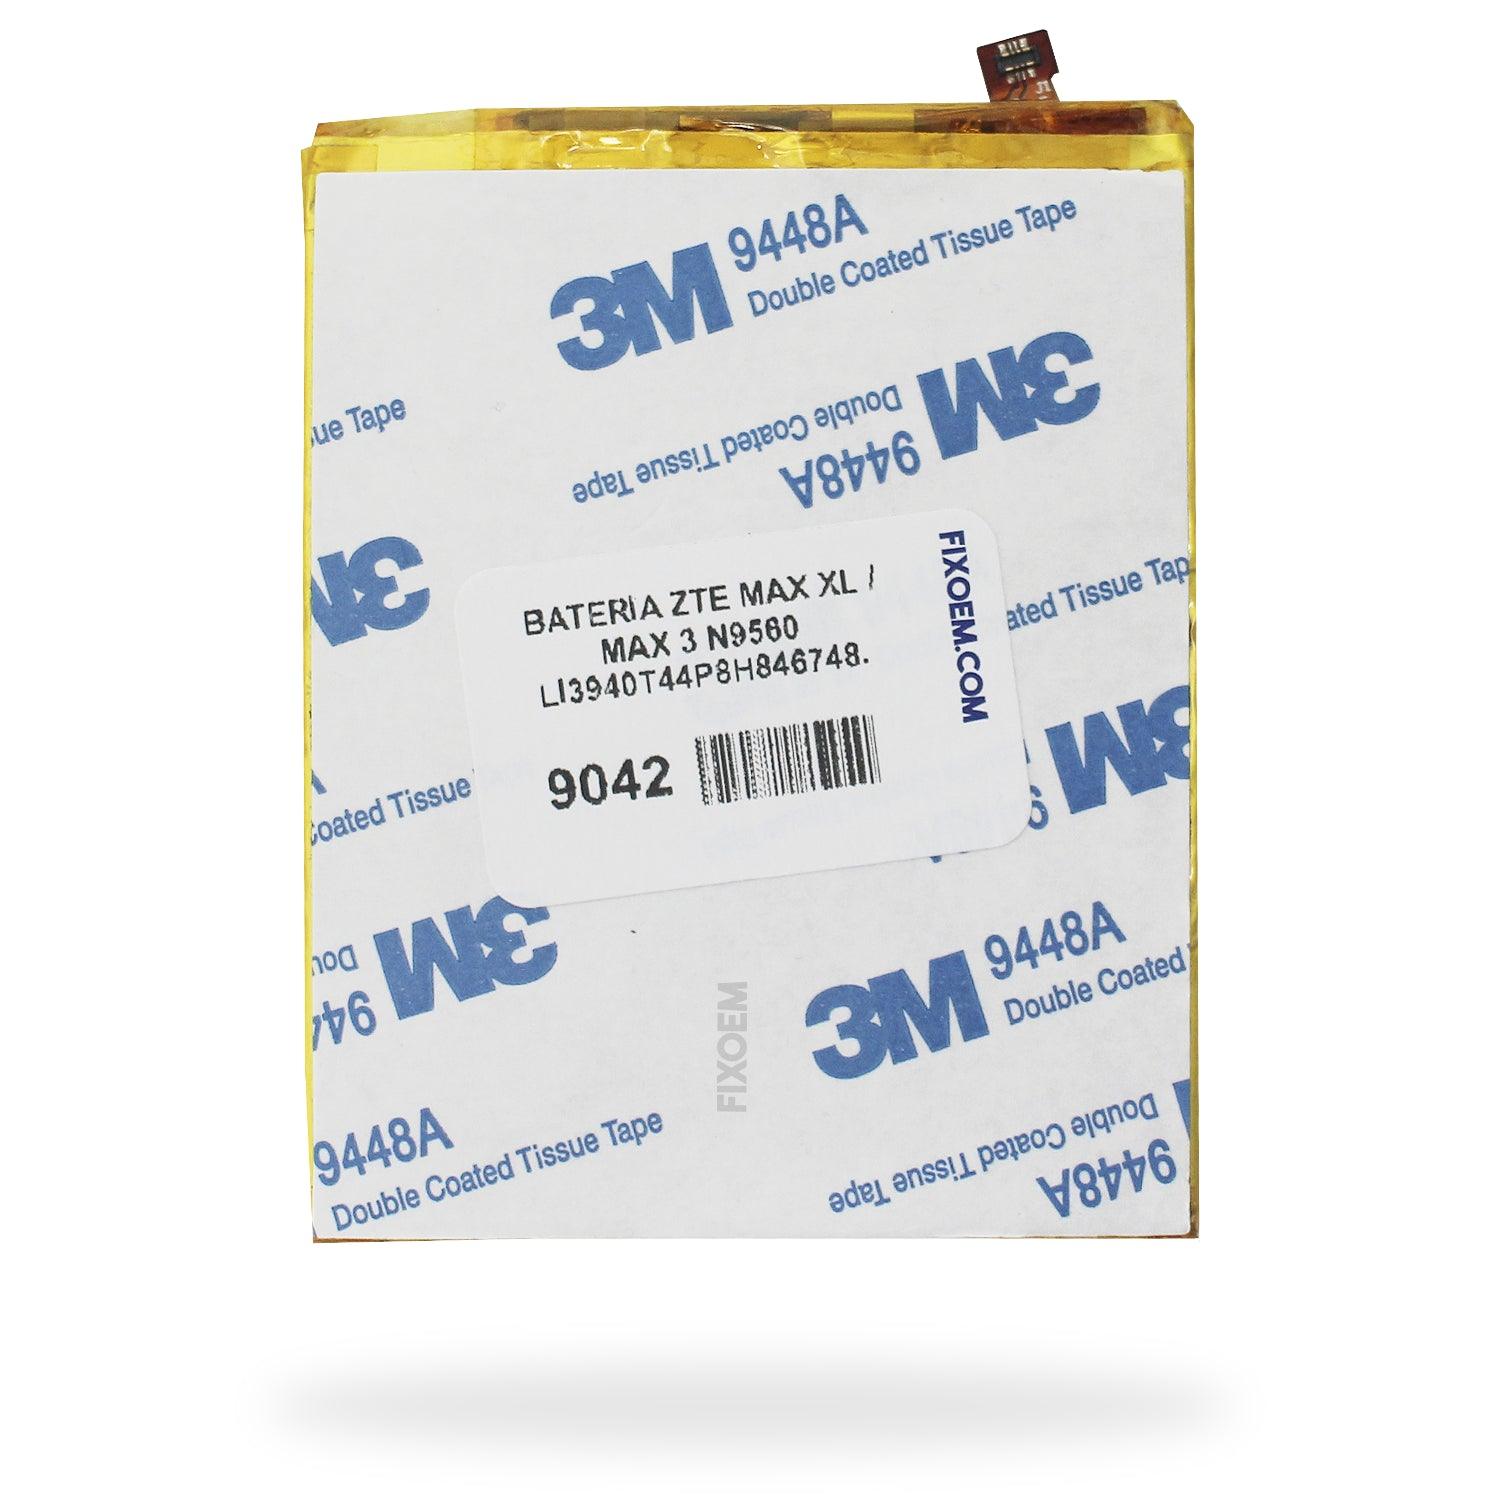 Bateria Zte Max Xl / Max 3 N9560 Li3940T44P8H846748. a solo $ 120.00 Refaccion y puestos celulares, refurbish y microelectronica.- FixOEM